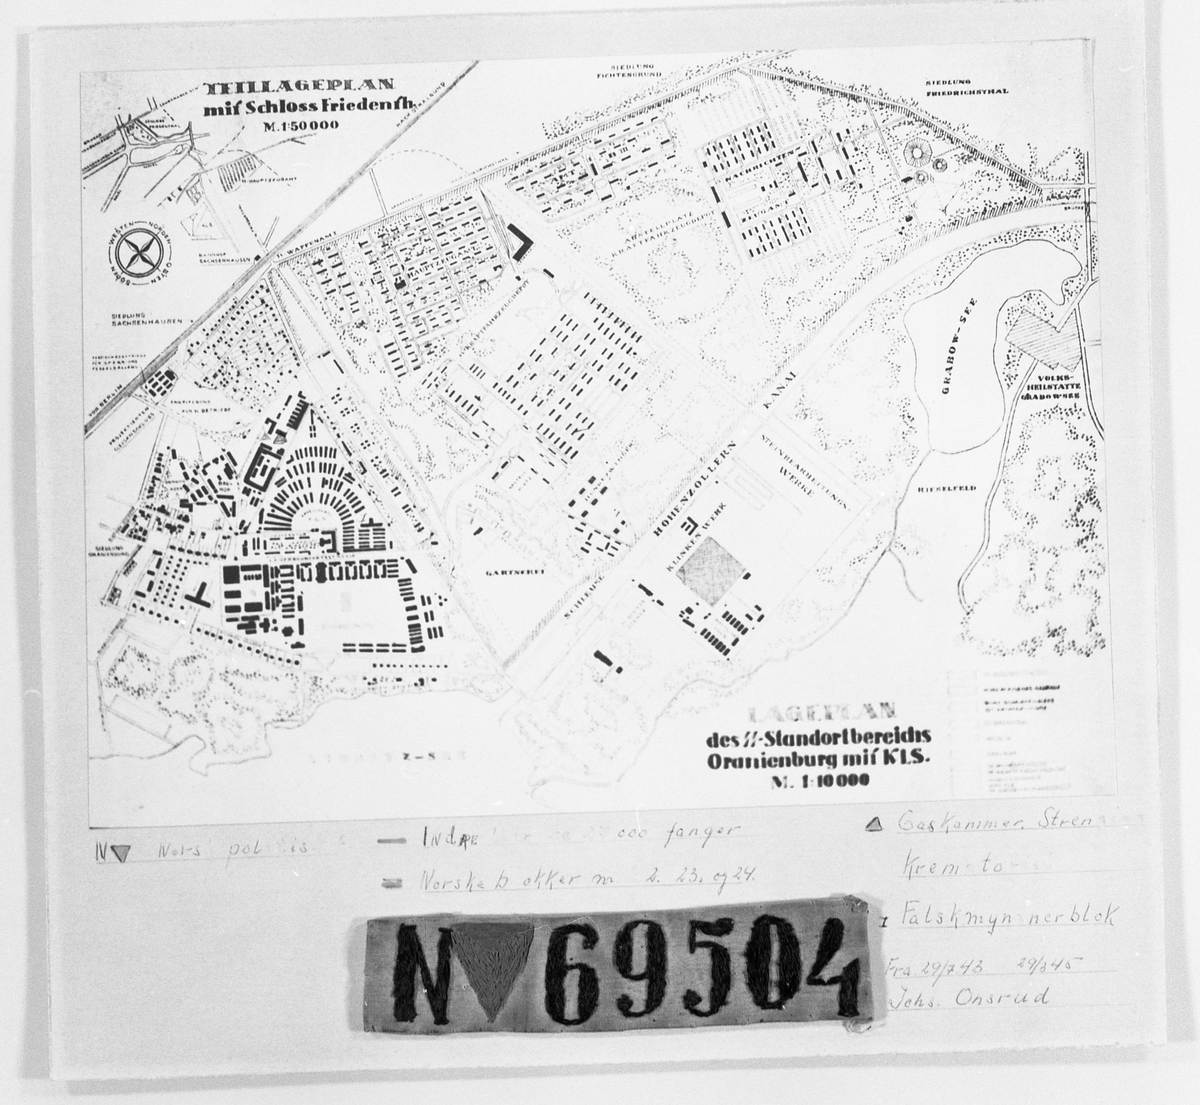 KLS - Sachsenhausen: Kart/Plan over leiren. 
No. 69504: Fangenummer for Johs. Onsrud, Kapp.